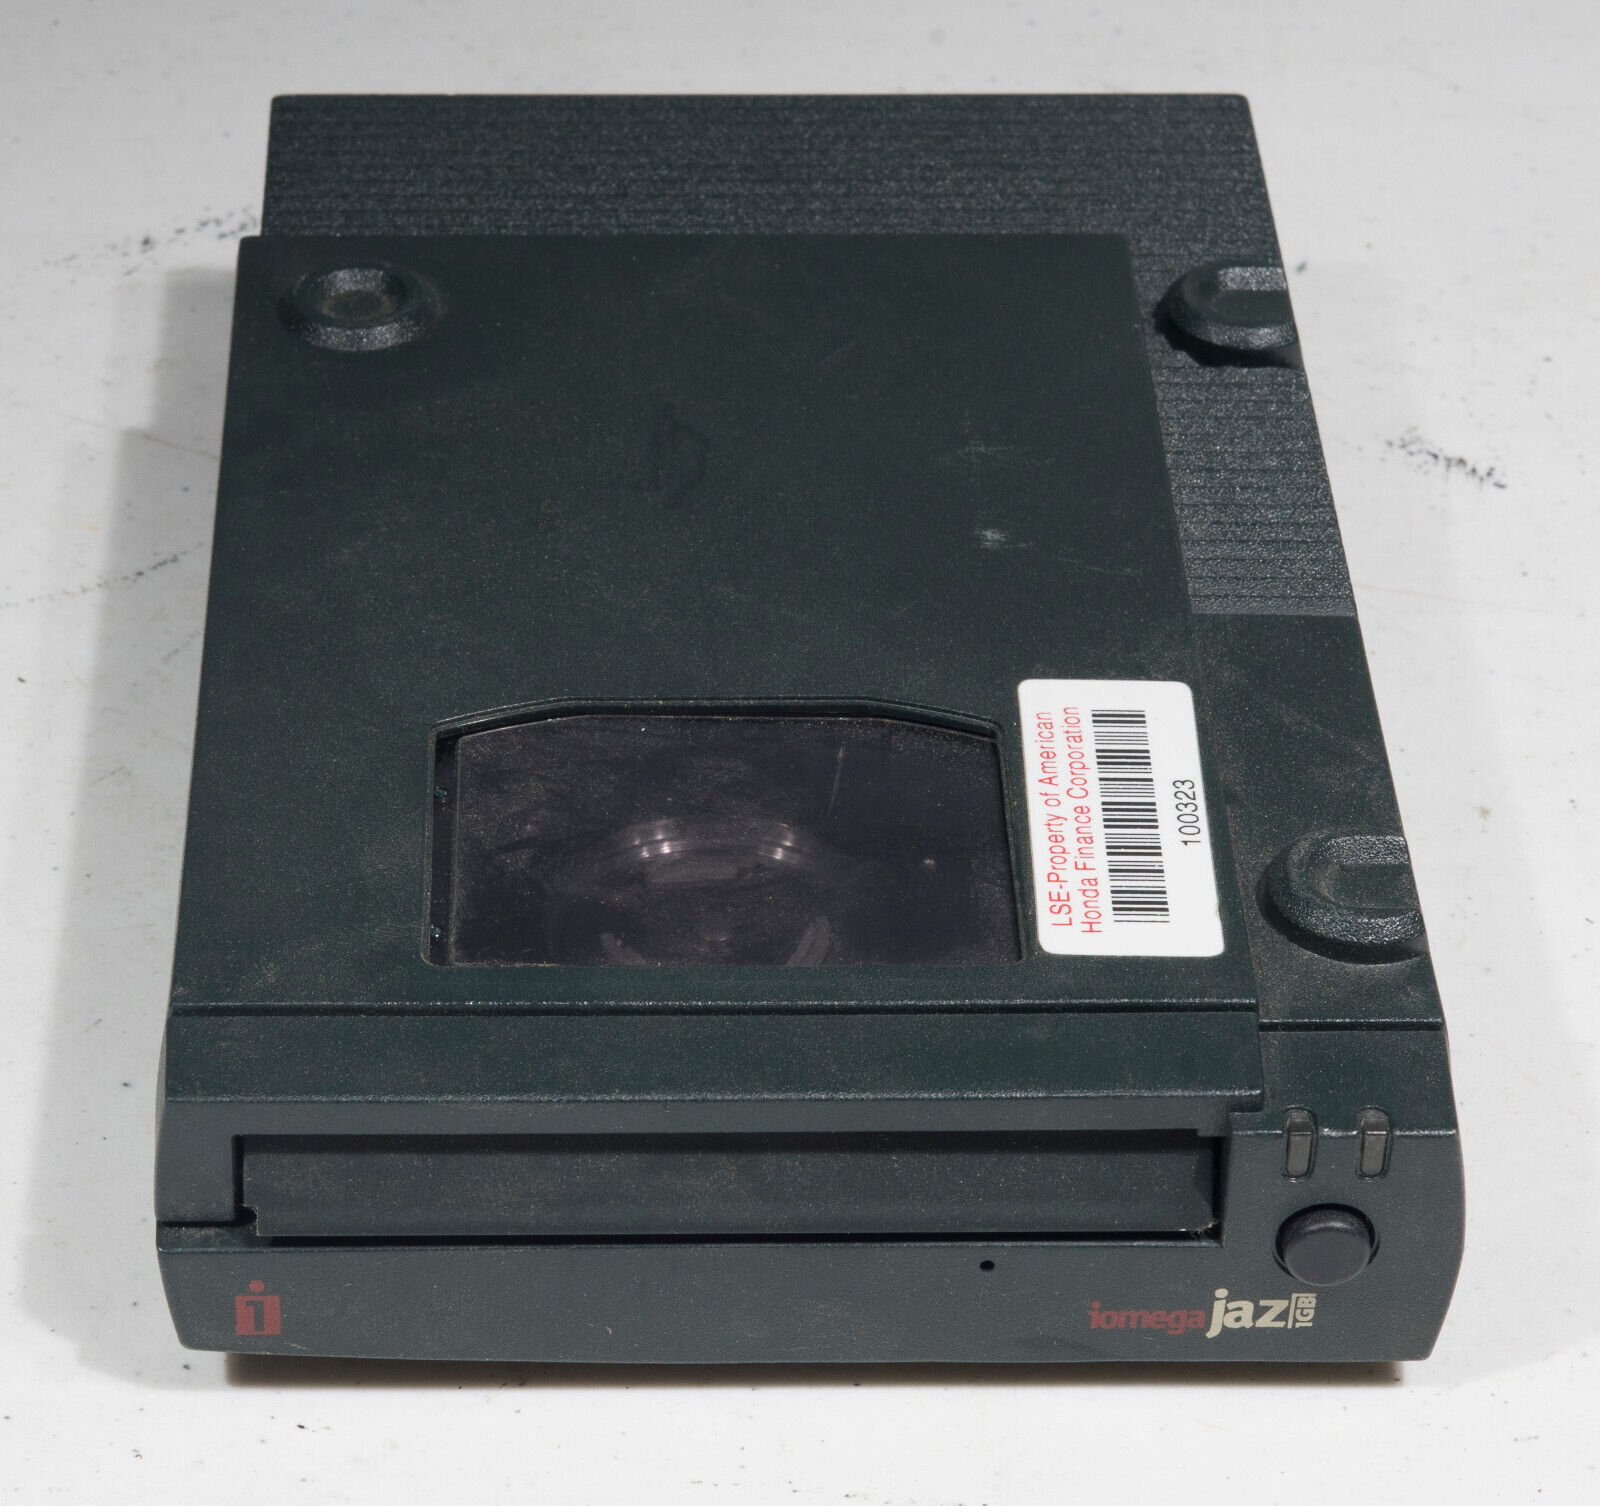 Vintage Iomega Jaz V1000S 1GB SCSI External Drive DDXV1000S